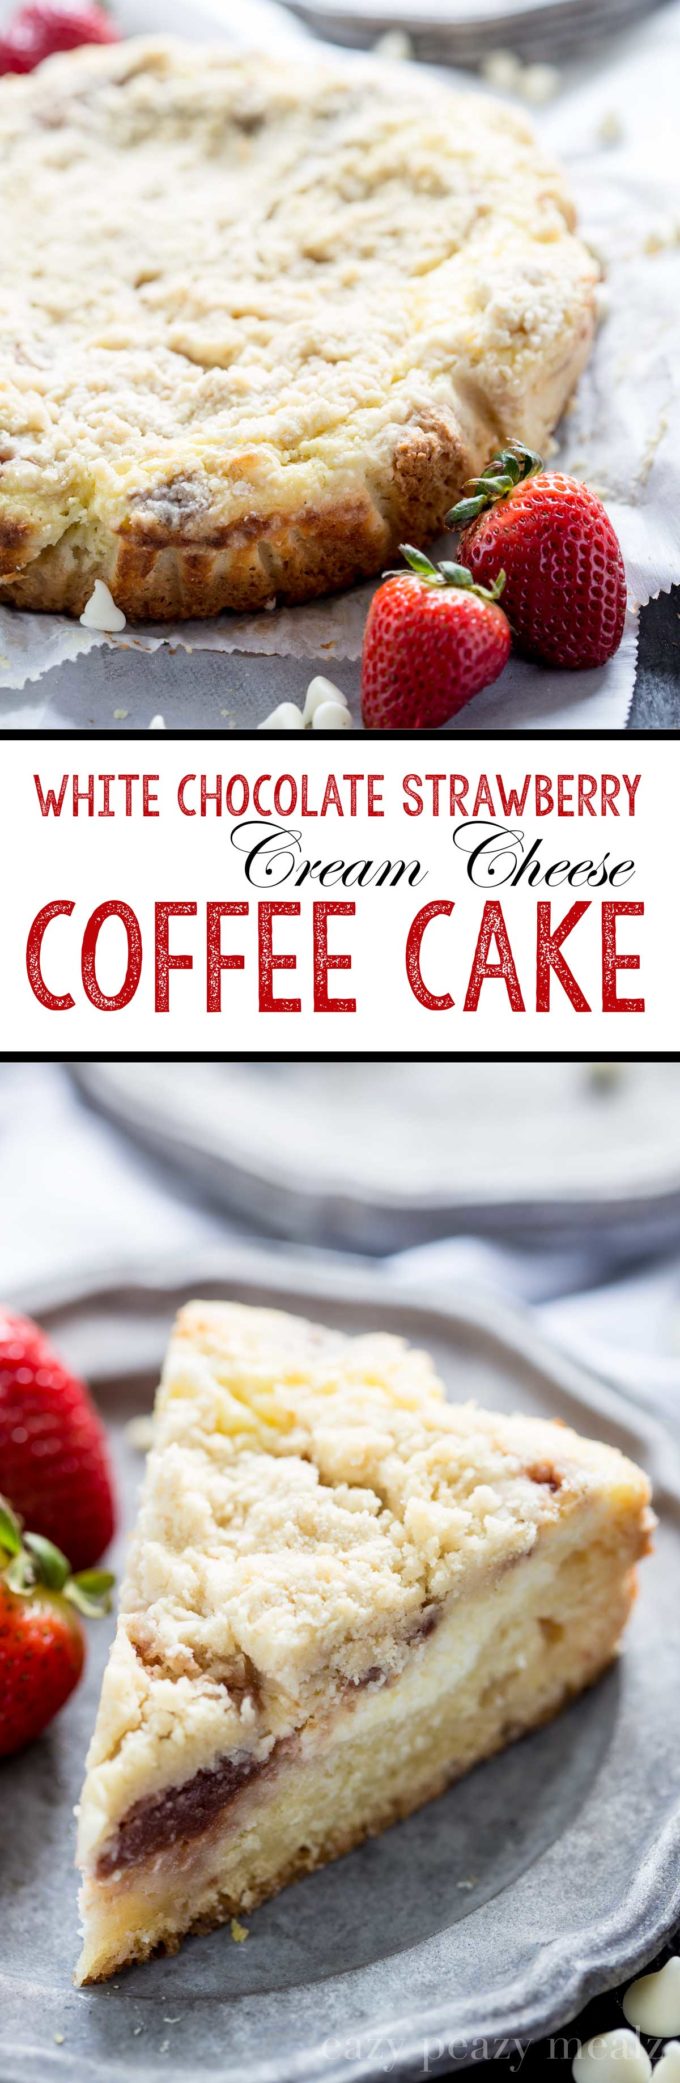 white chocolate strawberry cream cheese coffee cake